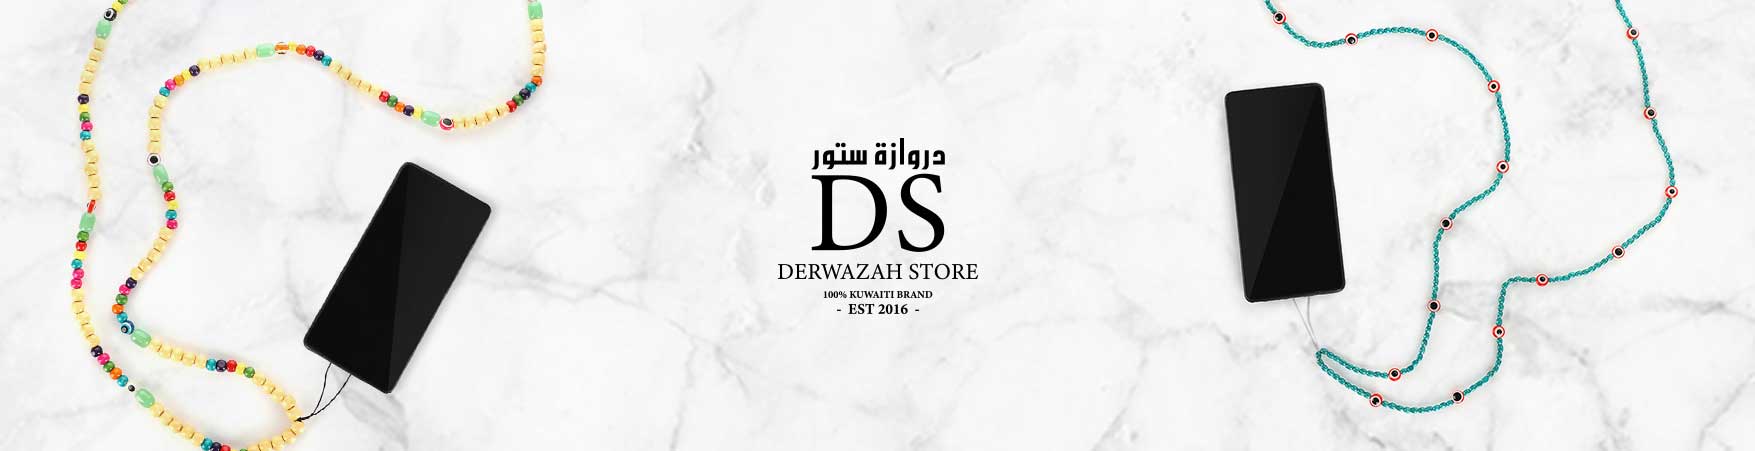 Derwazah Store